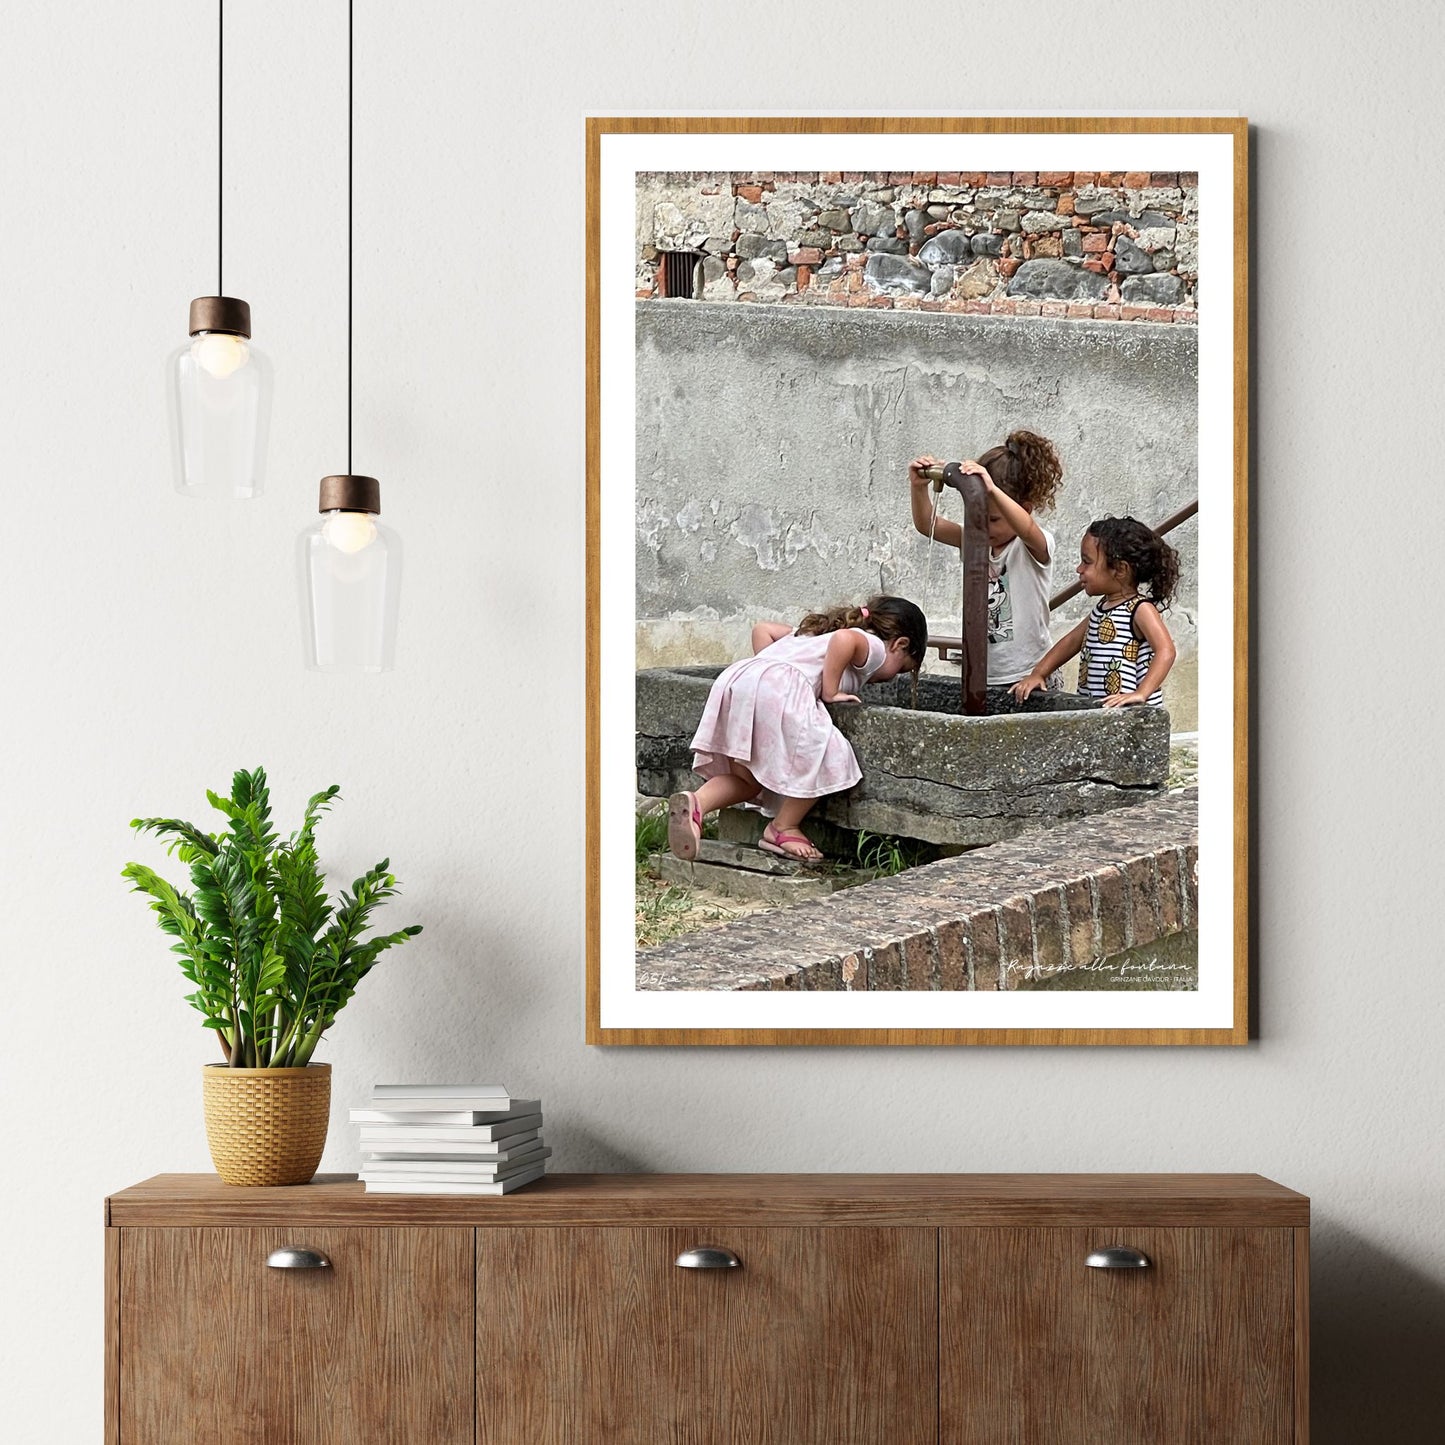 Det er en varm sommerdag i Piemonte. Tre små jenter i sommerkjoler drikker vann og avkjøler seg i vannfontenen i Grinzane Cavour.